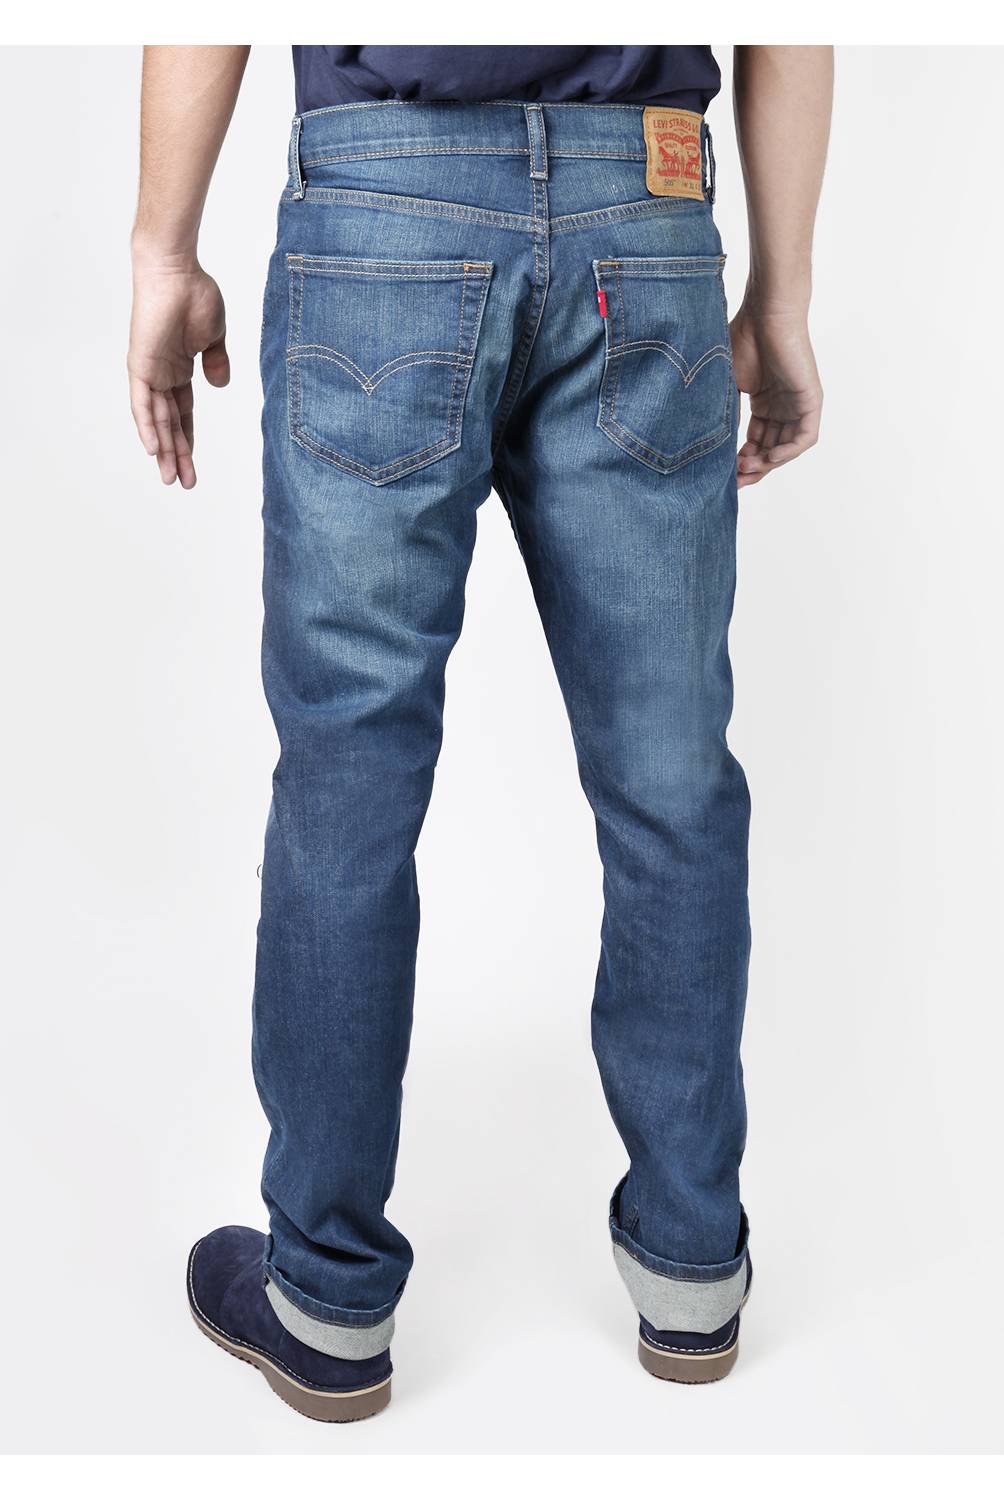 LEVIS - Jeans Regular Fit